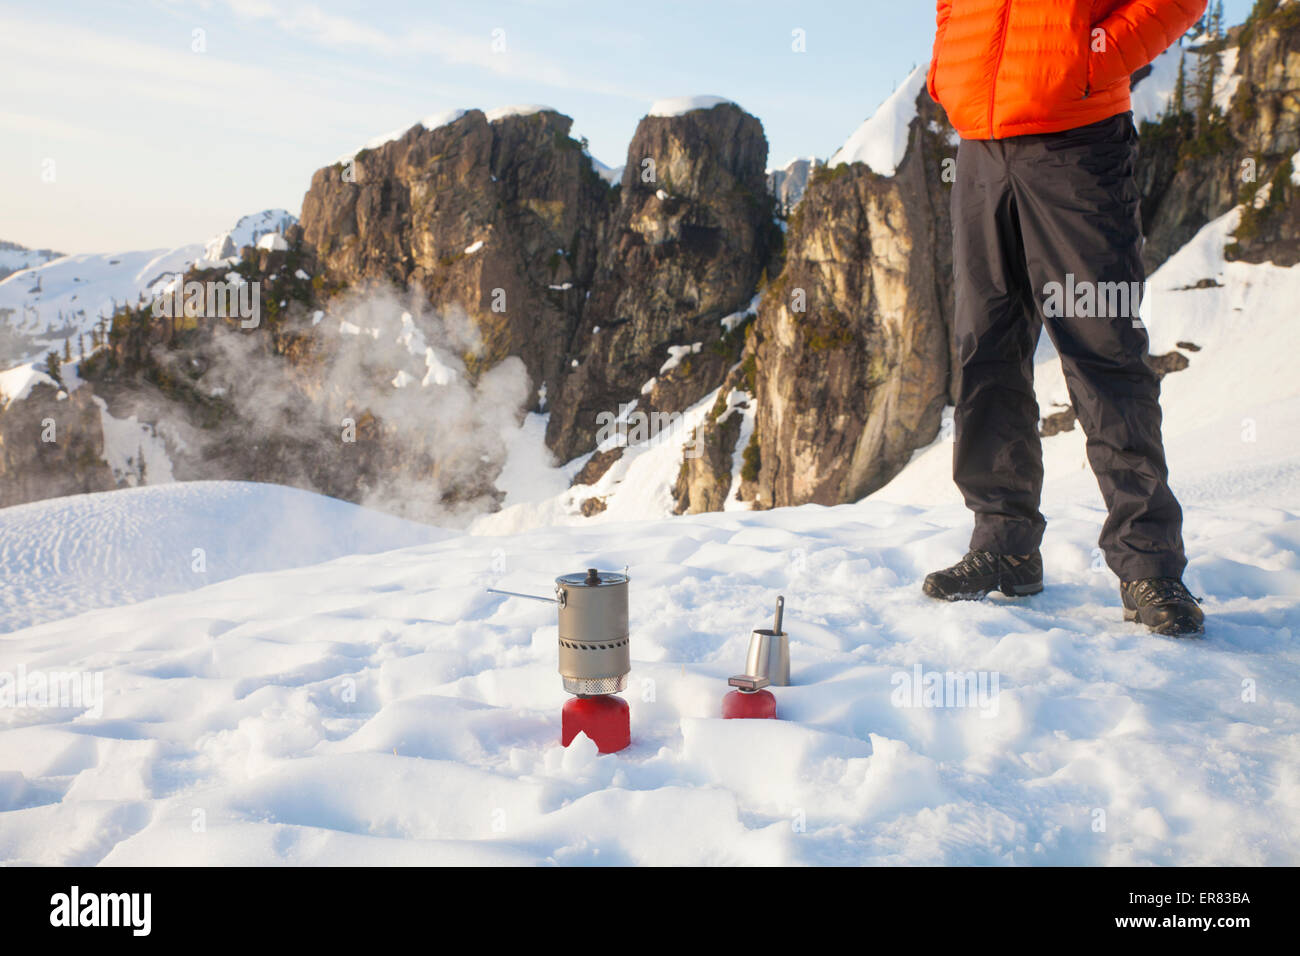 Un grimpeur s'occupe de son réchaud de camping en camping dans les montagnes. Banque D'Images